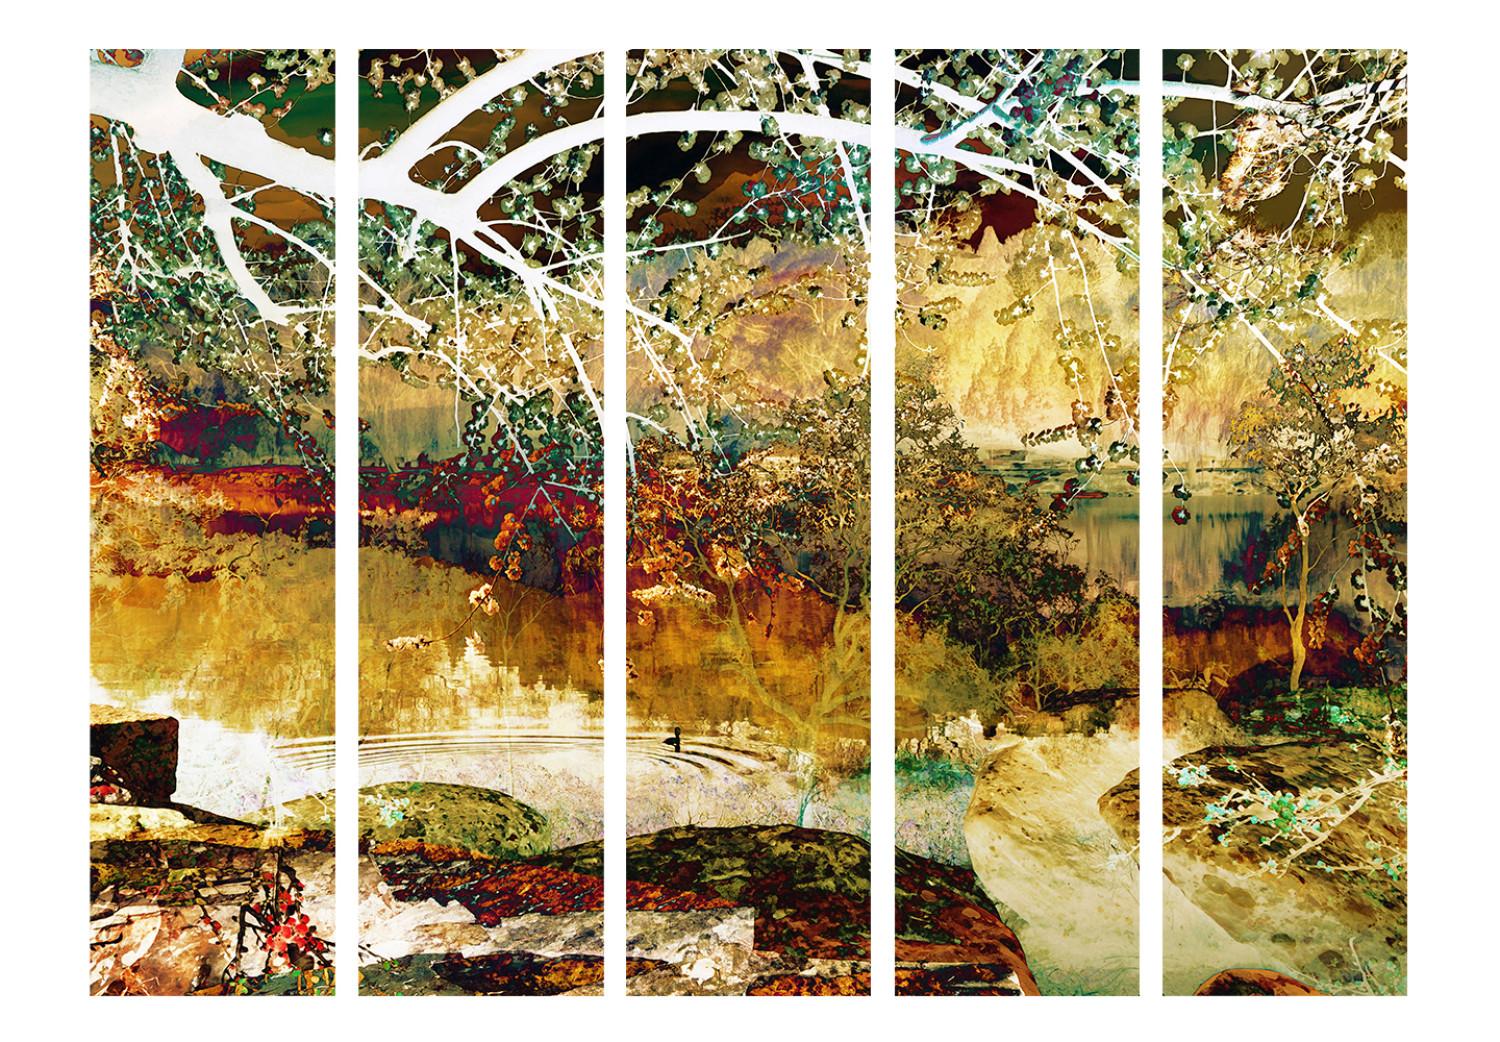 Biombo barato River of Life II (5 partes) - paisaje abstracto con río dorado